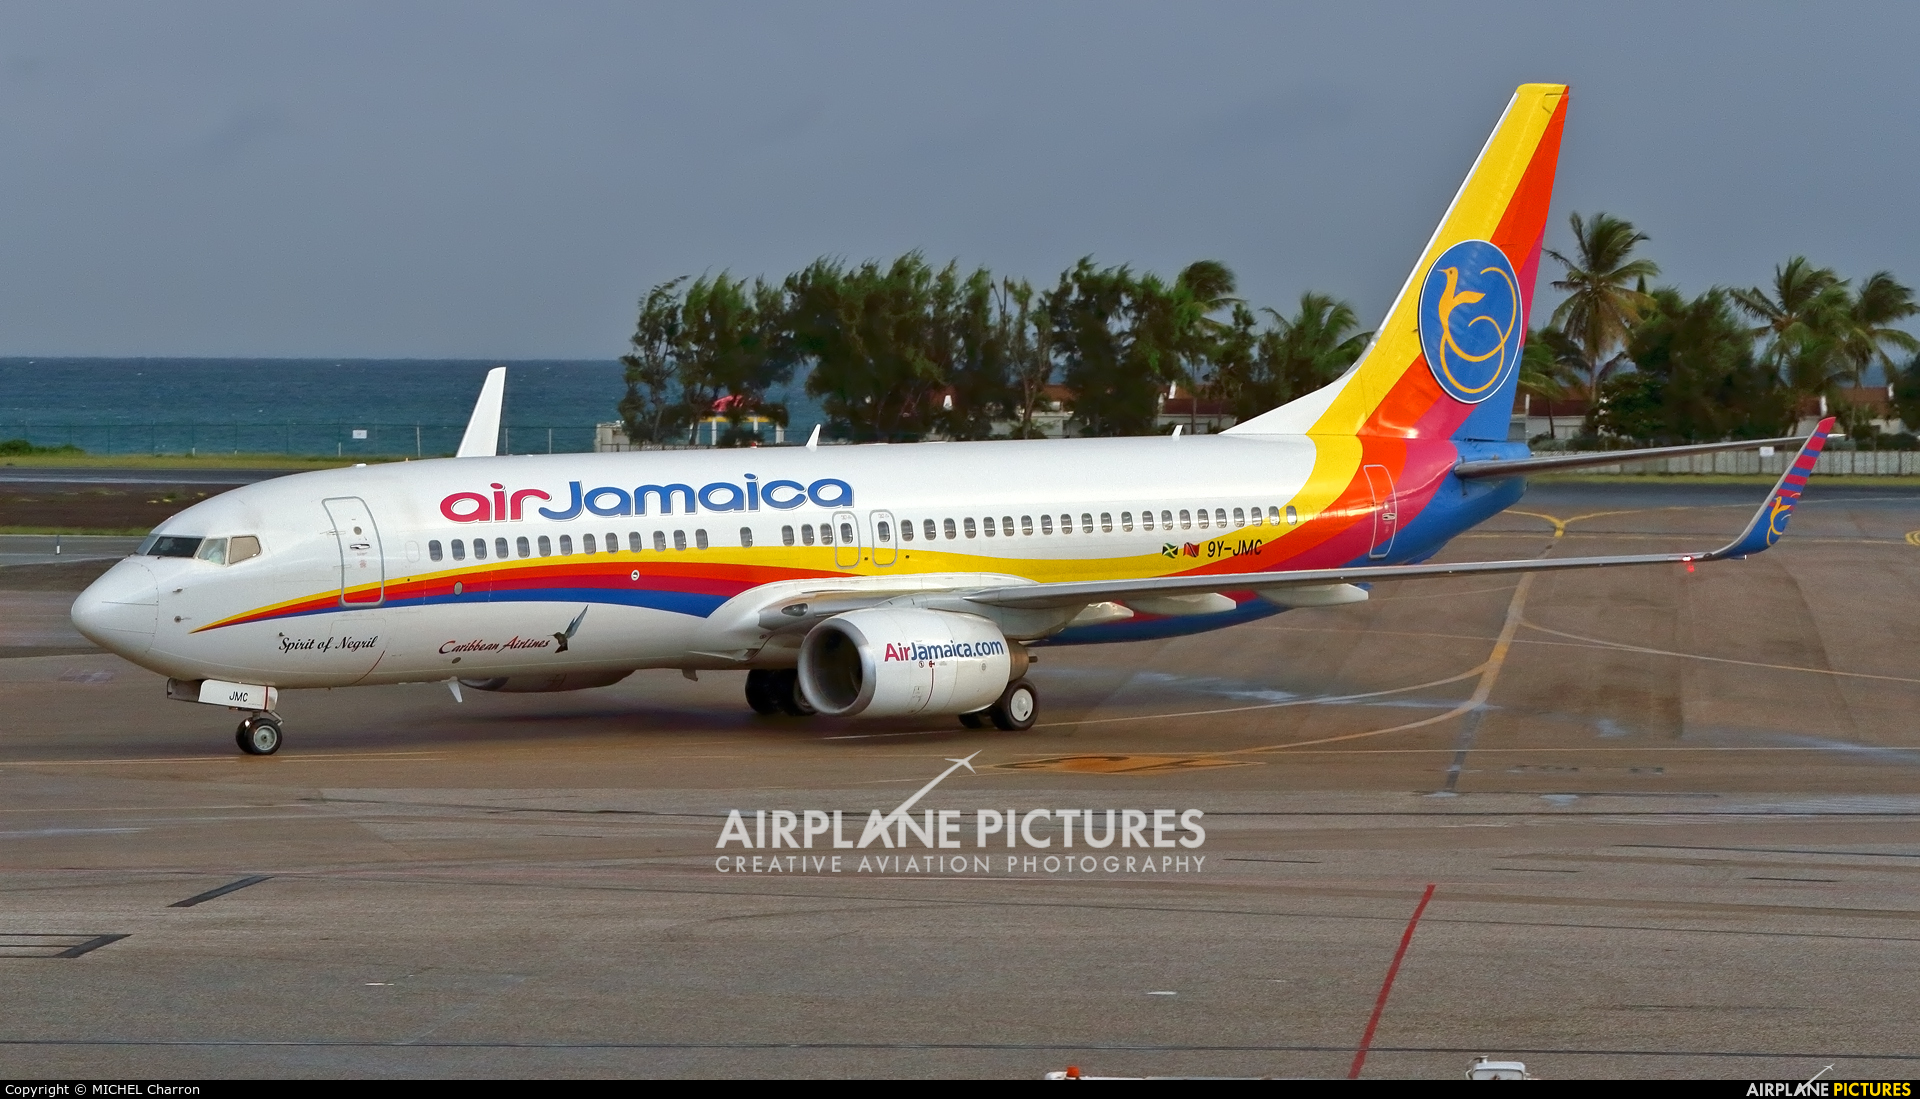 LP03113 A300 Air Jamaica 1/200 OC 